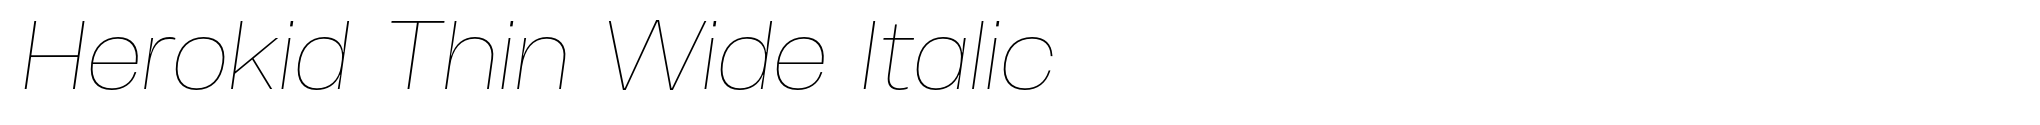 Herokid Thin Wide Italic image